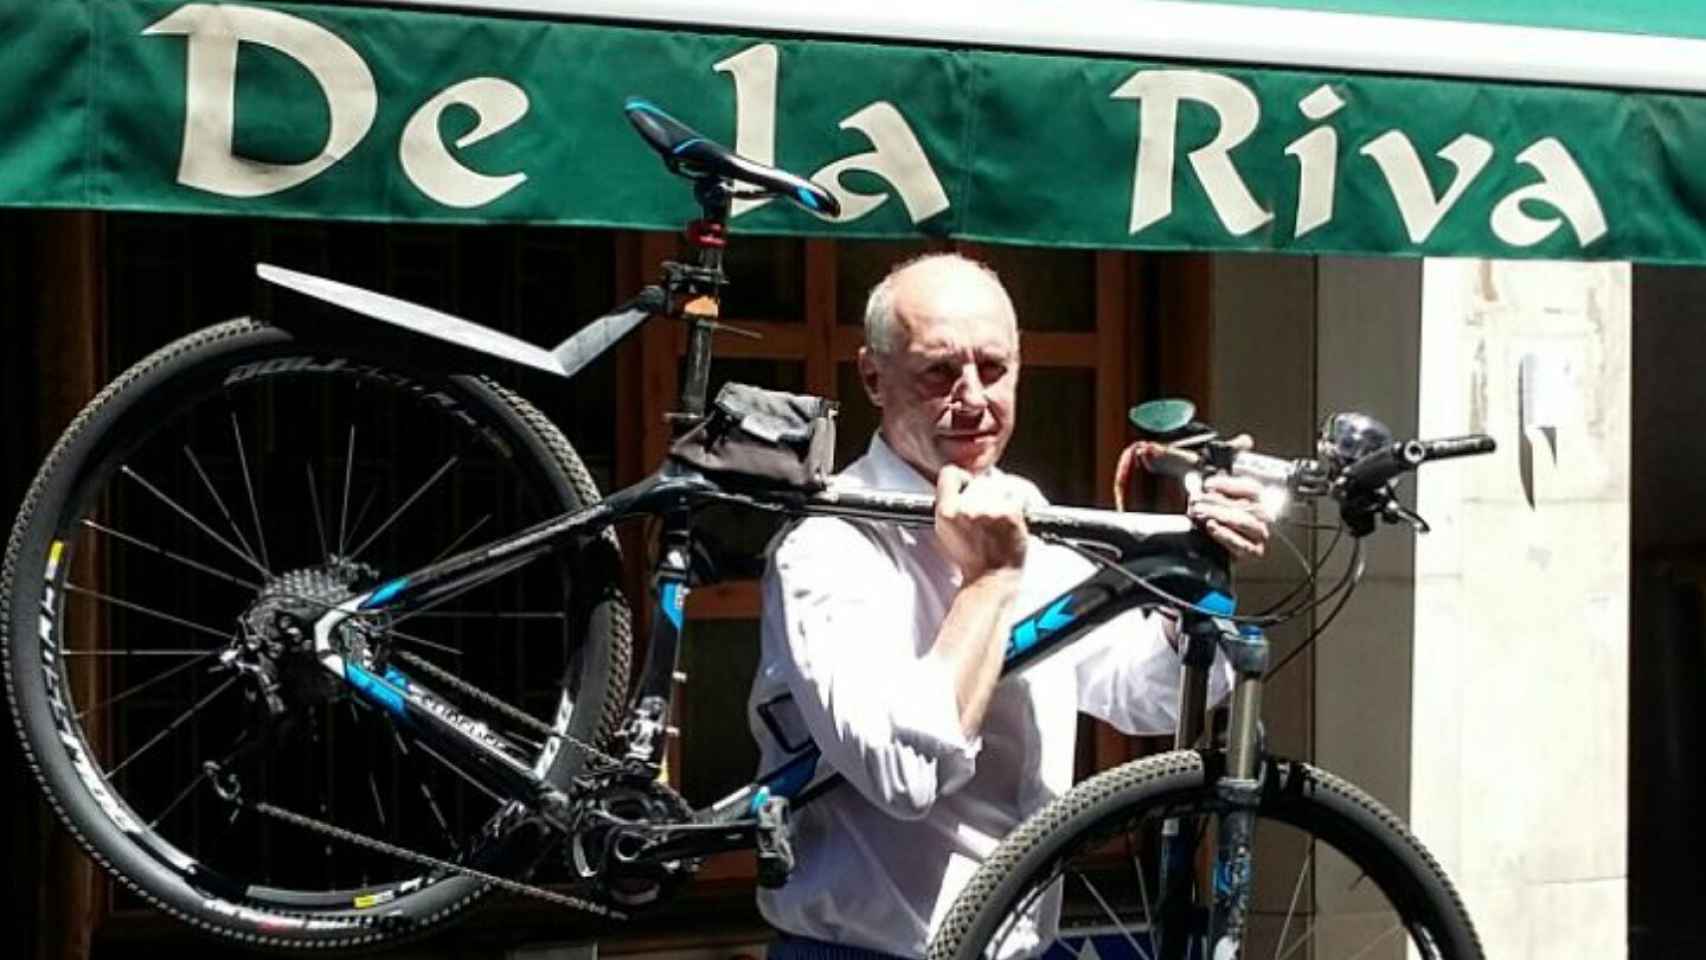 El dueño de De la riva con su bicicleta.